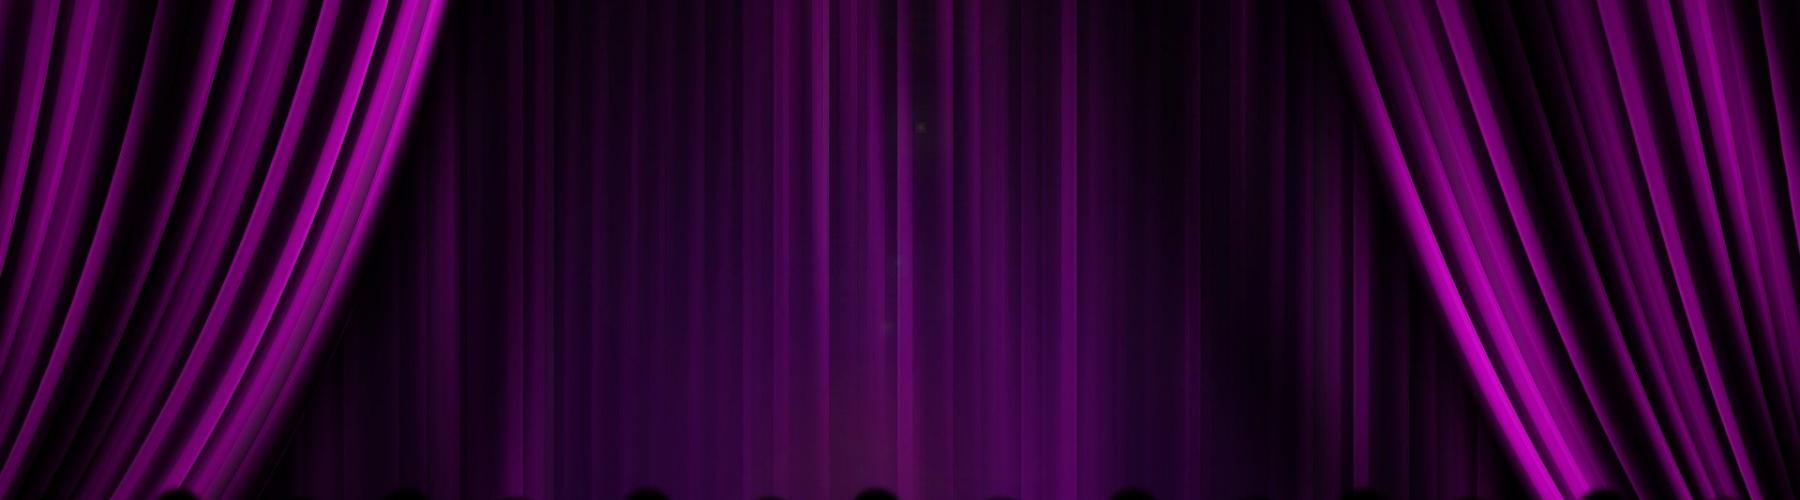 rideaux de scène violets ouverts de chaque côté avec têtes de personnes dans la pénombre